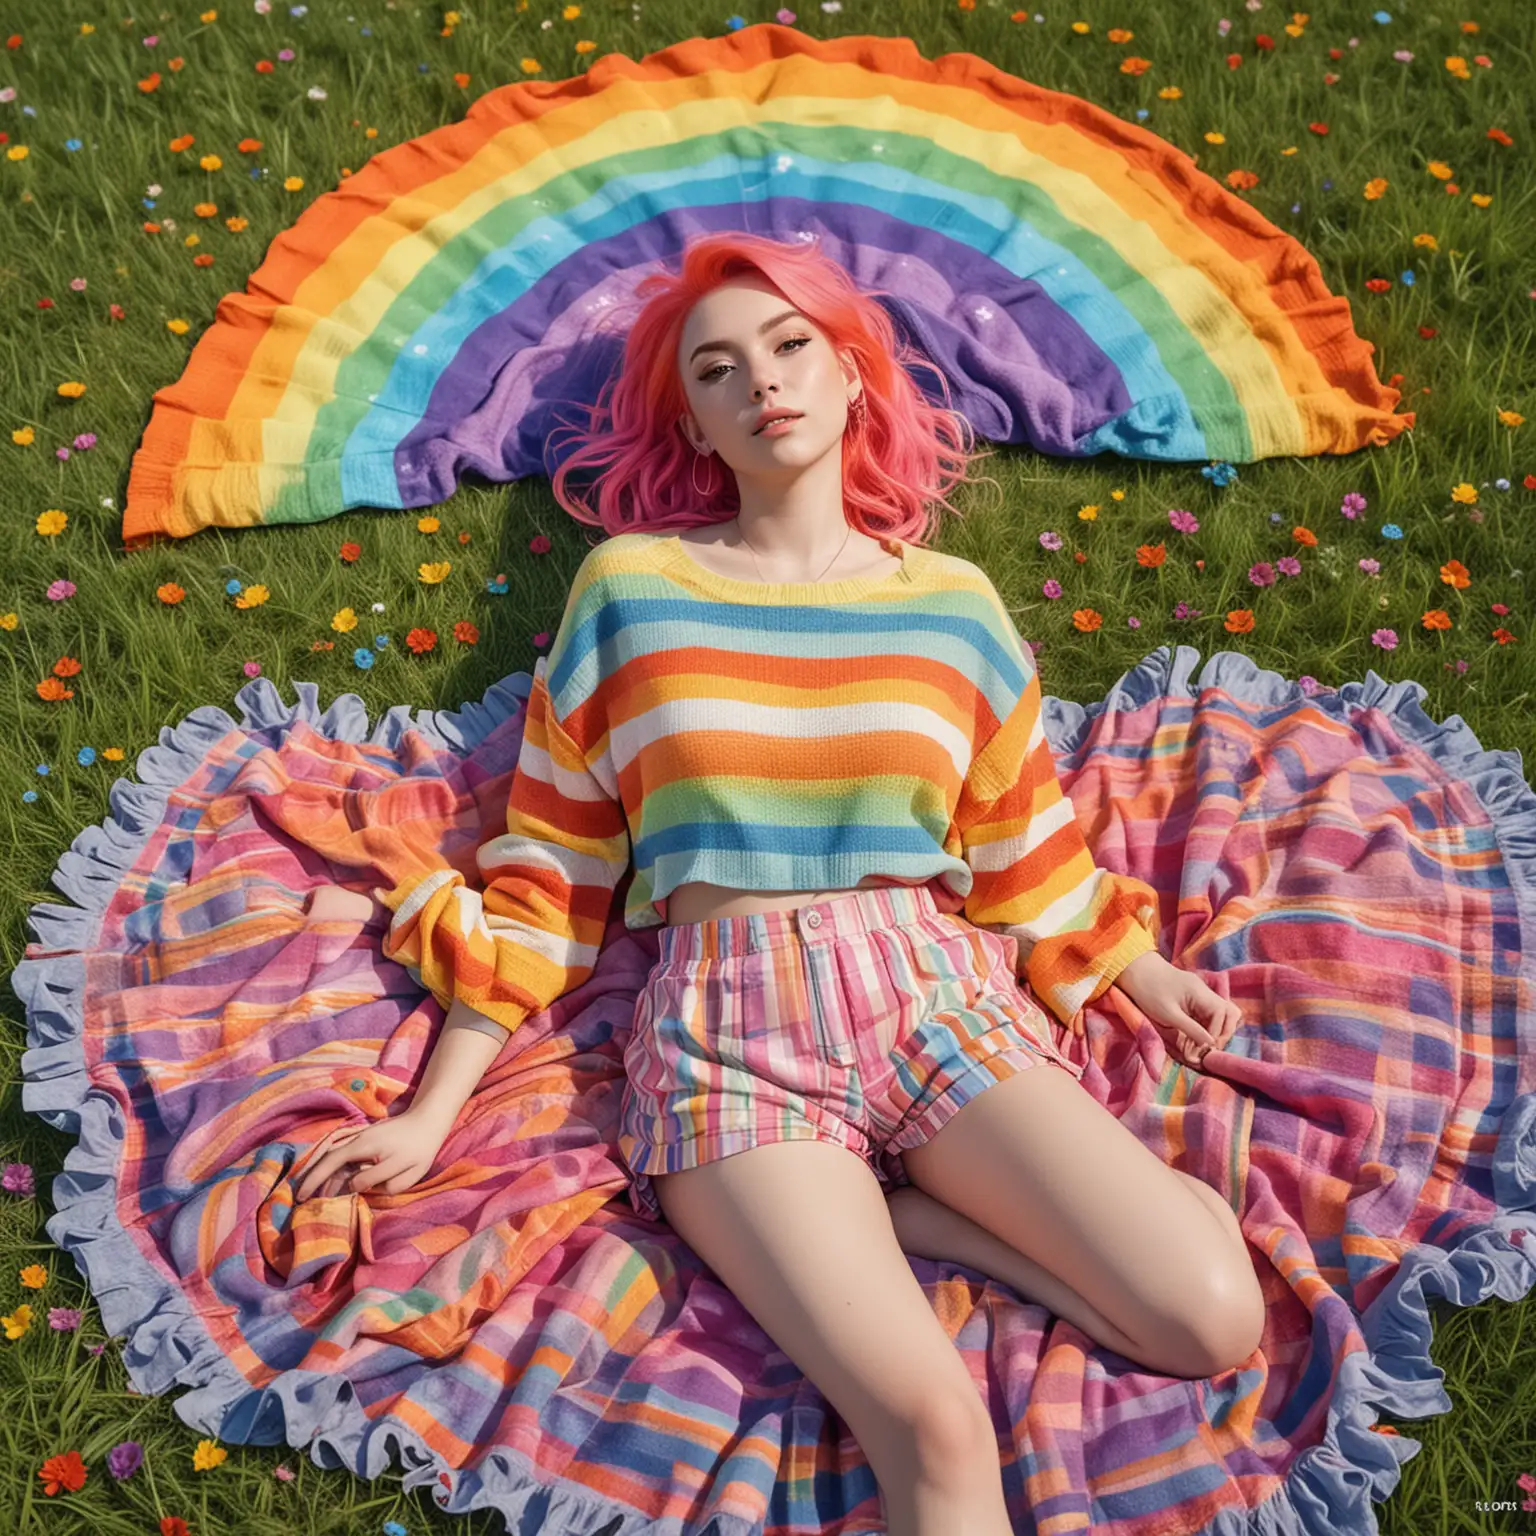 Realistisch einer jungen Frau mit Regenbogenhaarfarbe und sehr bunter Kleidung im Kawaii-Stil:
Regenbogenhimmel: Sie liegt auf einer pastellfarbenen Decke im Gras und betrachtet den Himmel, der von einem brillanten Regenbogen in allen Farben des Spektrums verziert ist.